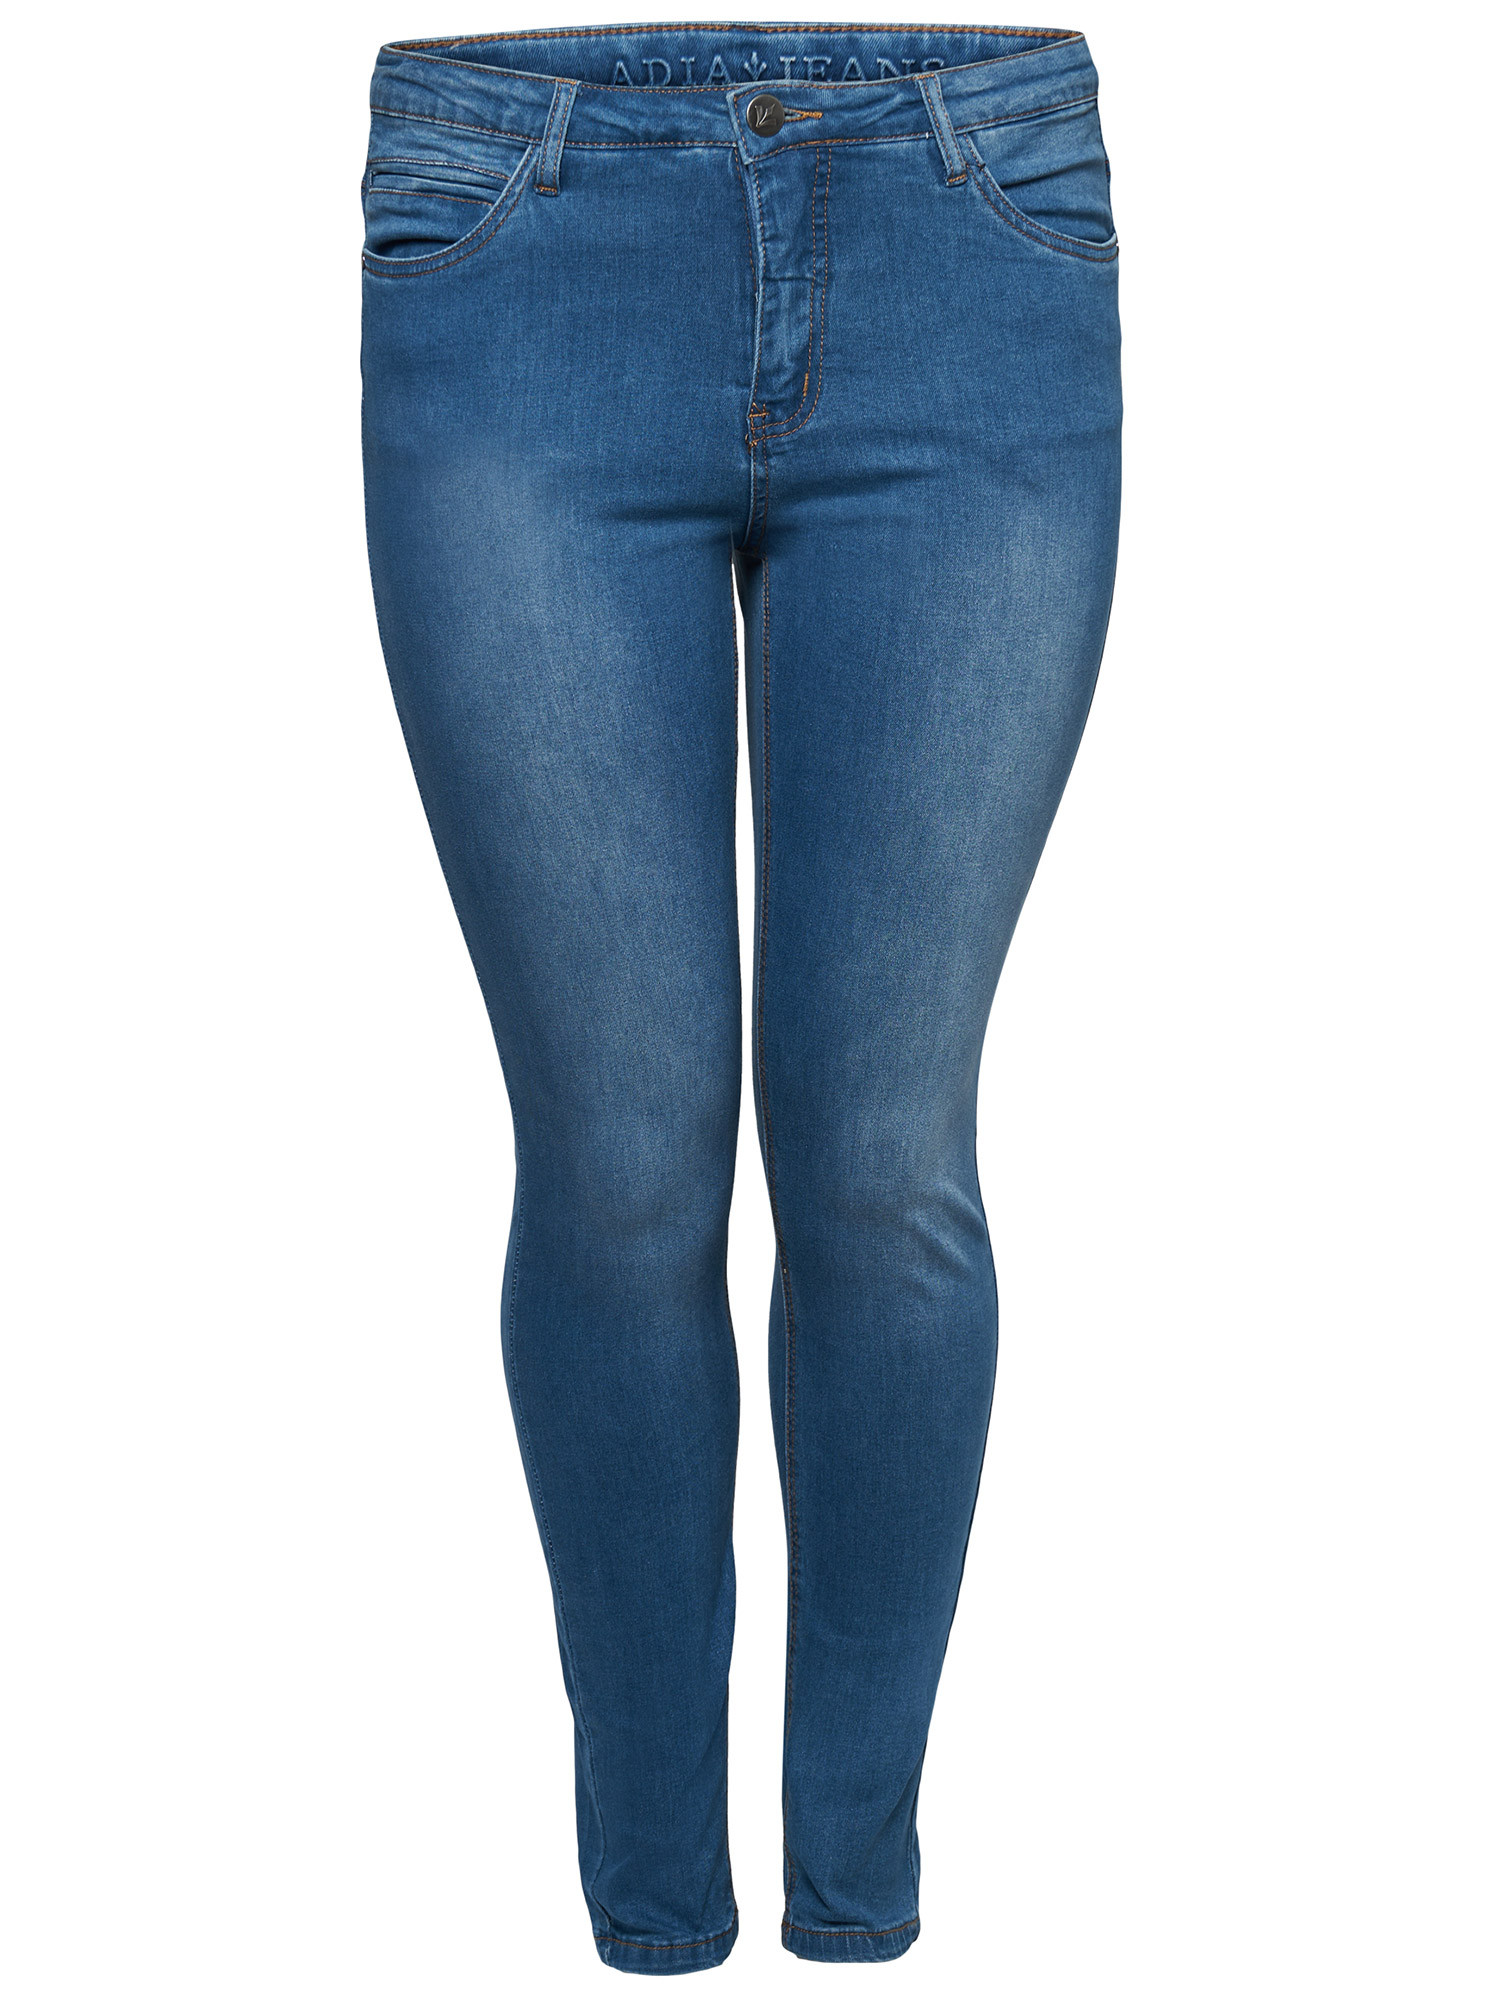 MILAN - Mørkeblå jeans